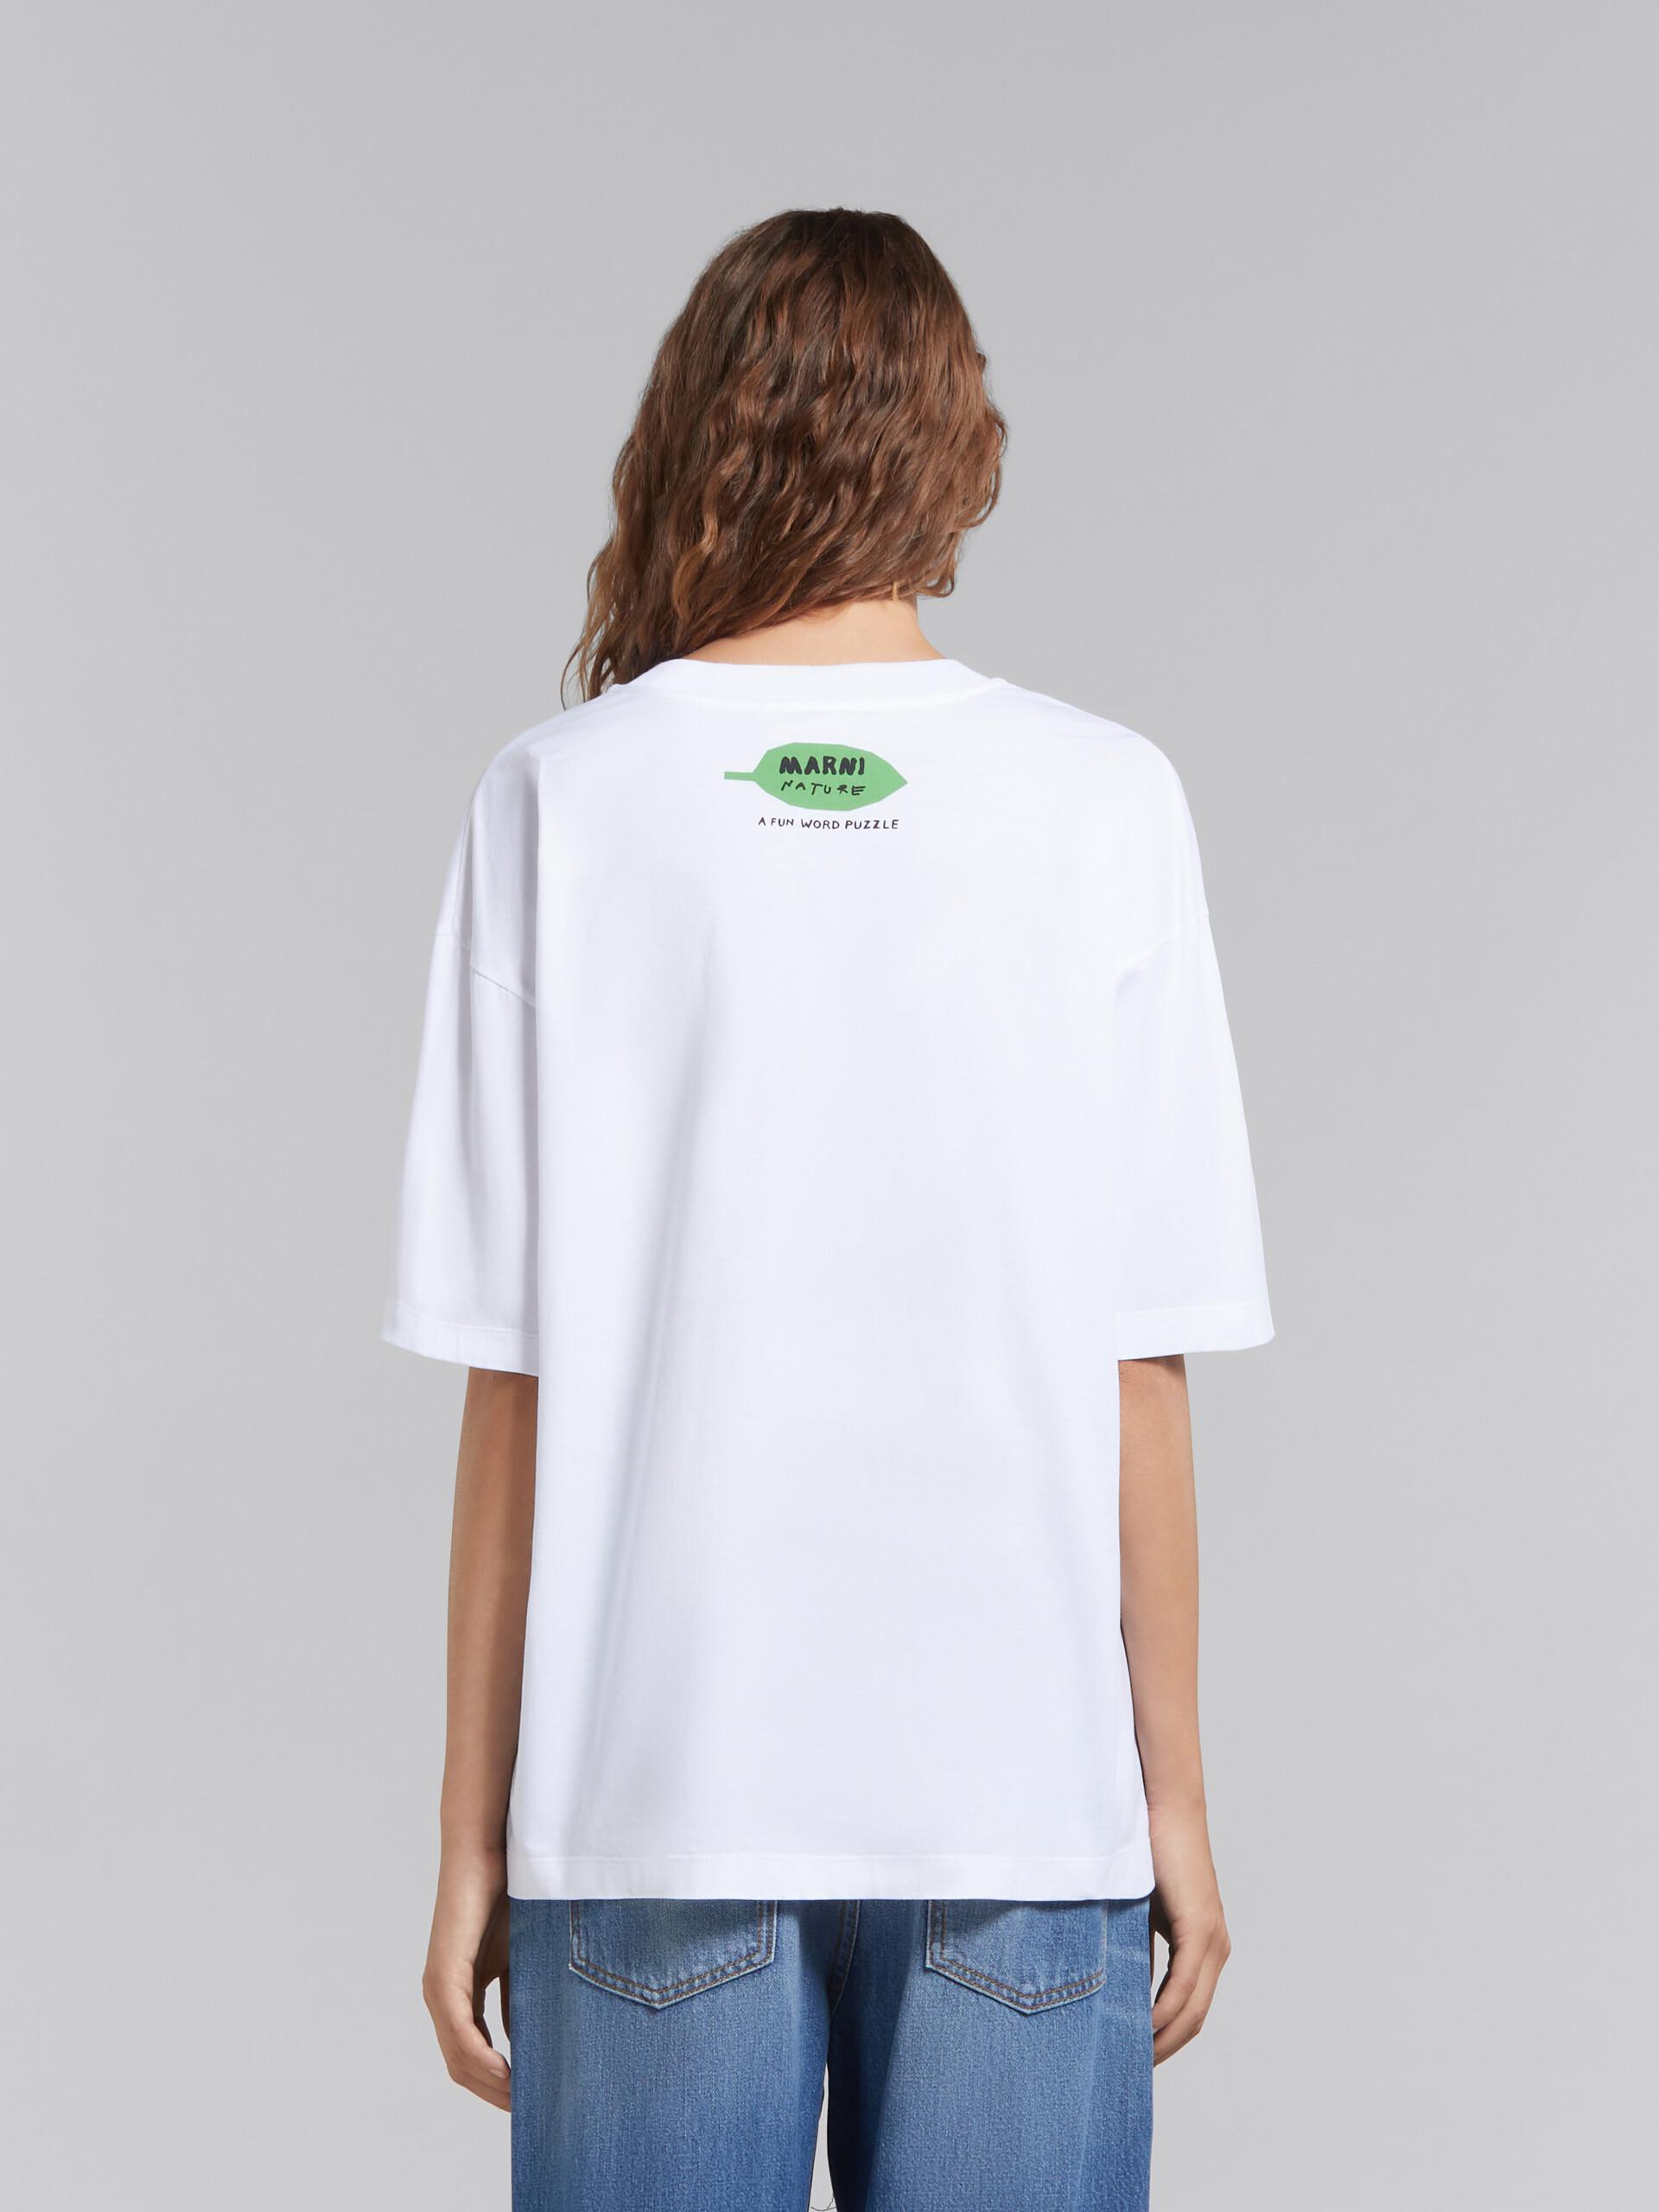 T-shirt en coton biologique blanc avec imprimé fleur et mots mêlés - T-shirts - Image 3